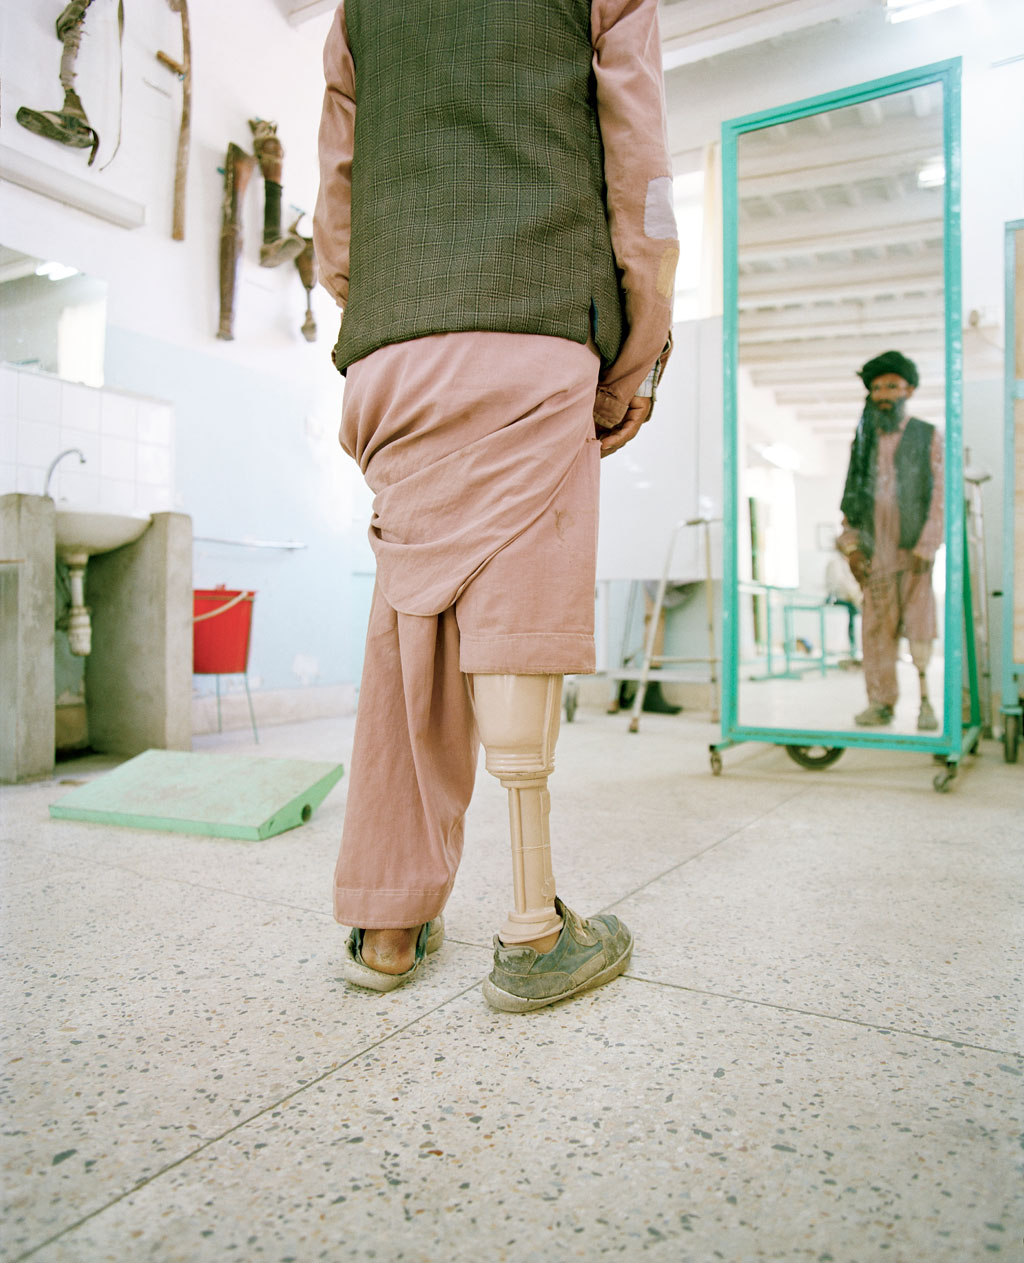 Andreas Zierhut - Afghanistan – living with mines - Felix Schoeller Photoaward